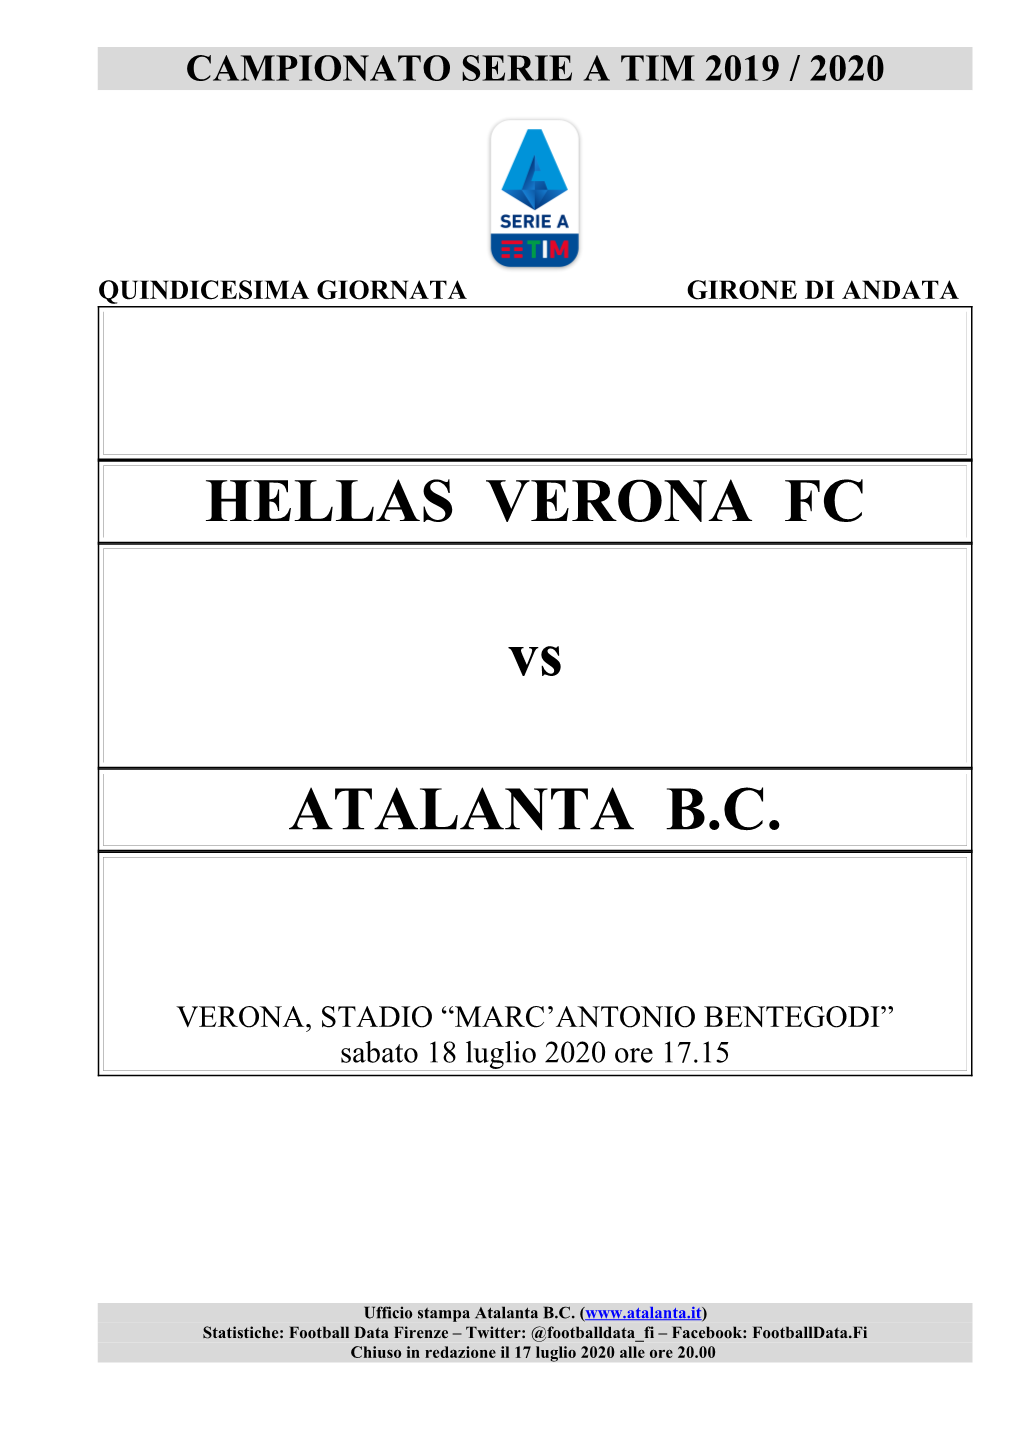 HELLAS VERONA FC Vs ATALANTA B.C